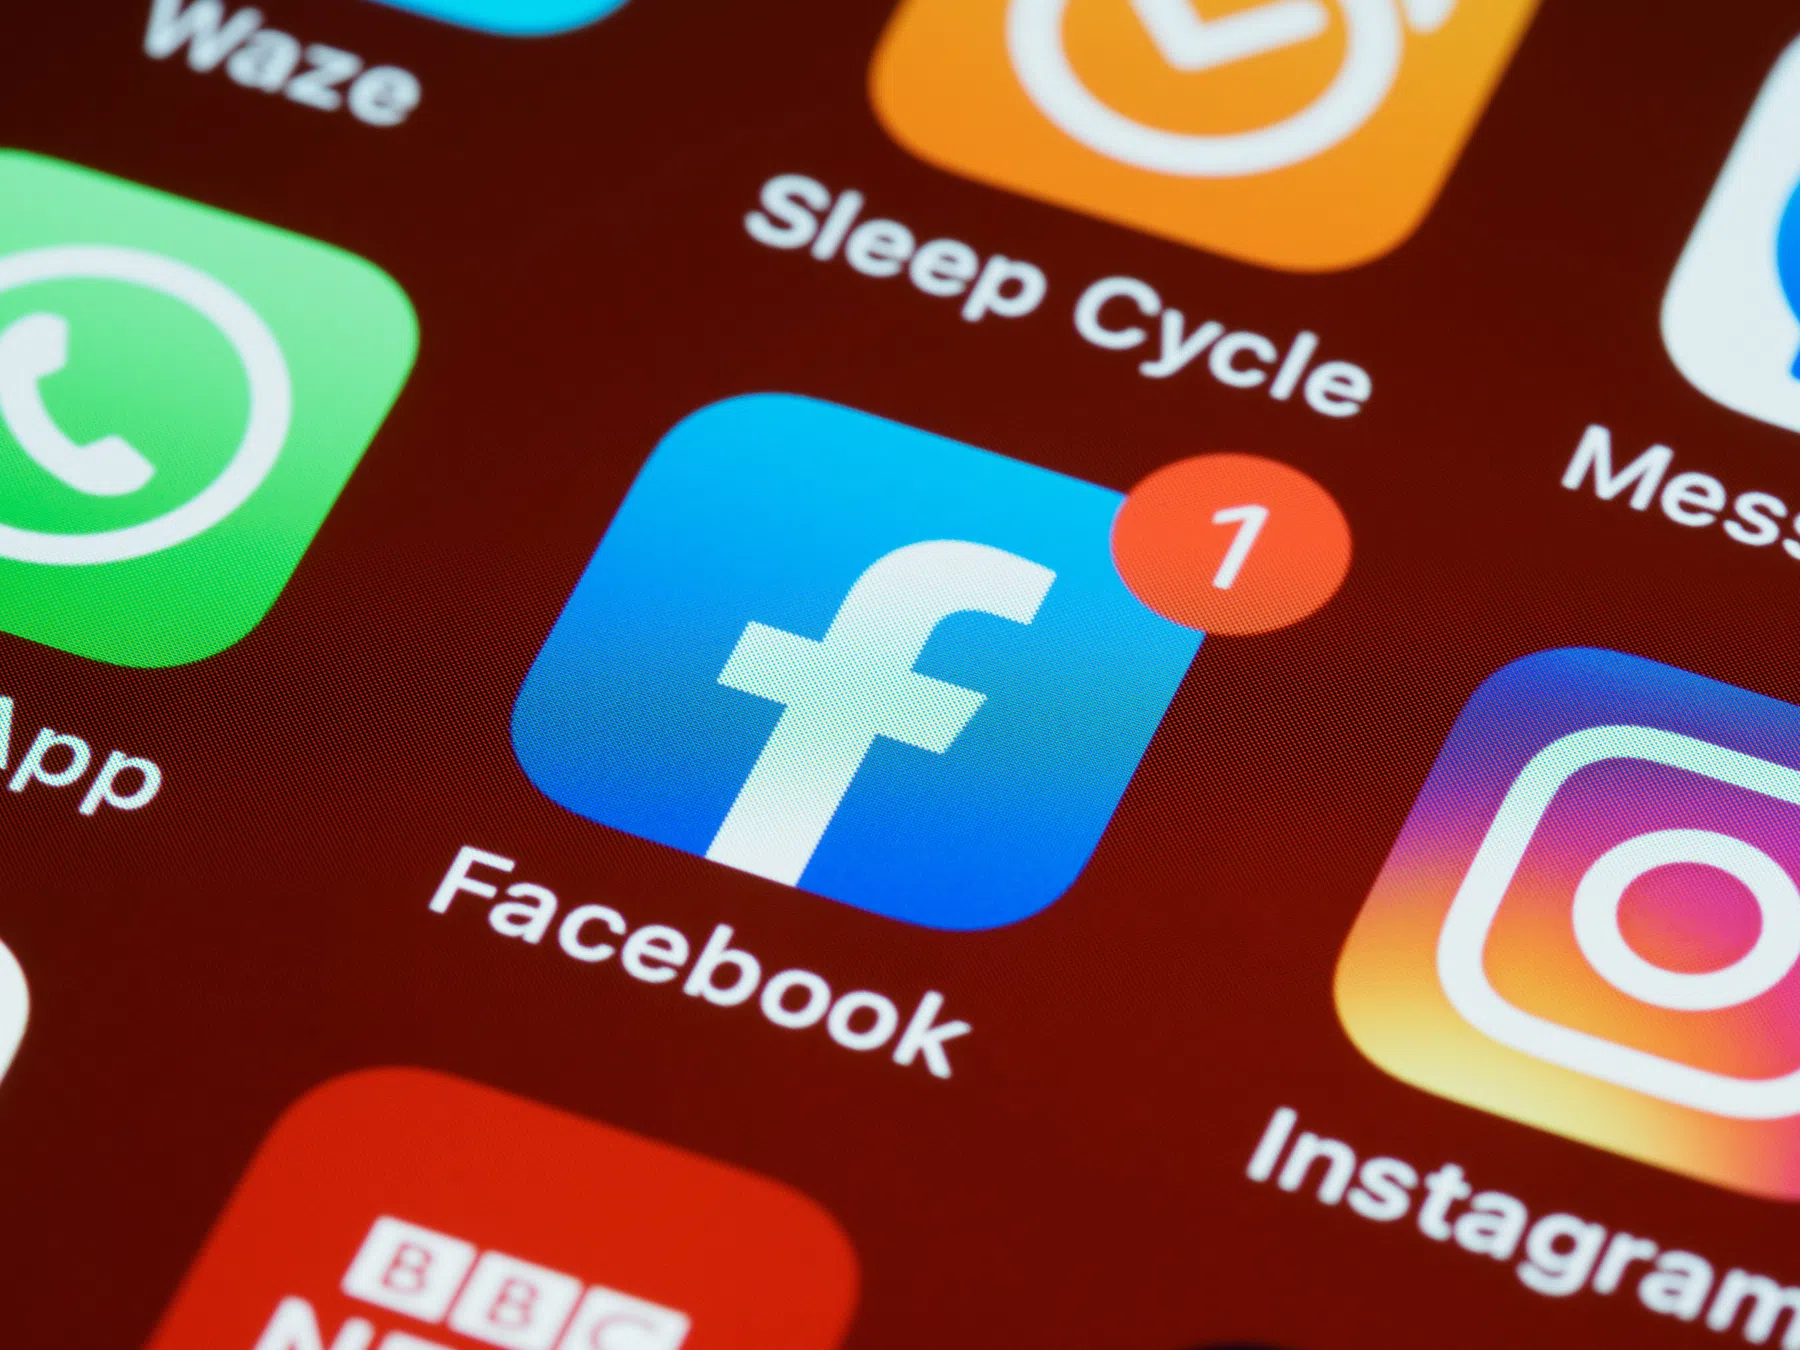 Klacht: Betalen voor privacy Facebook en Instagram onacceptabel, prijs te hoog